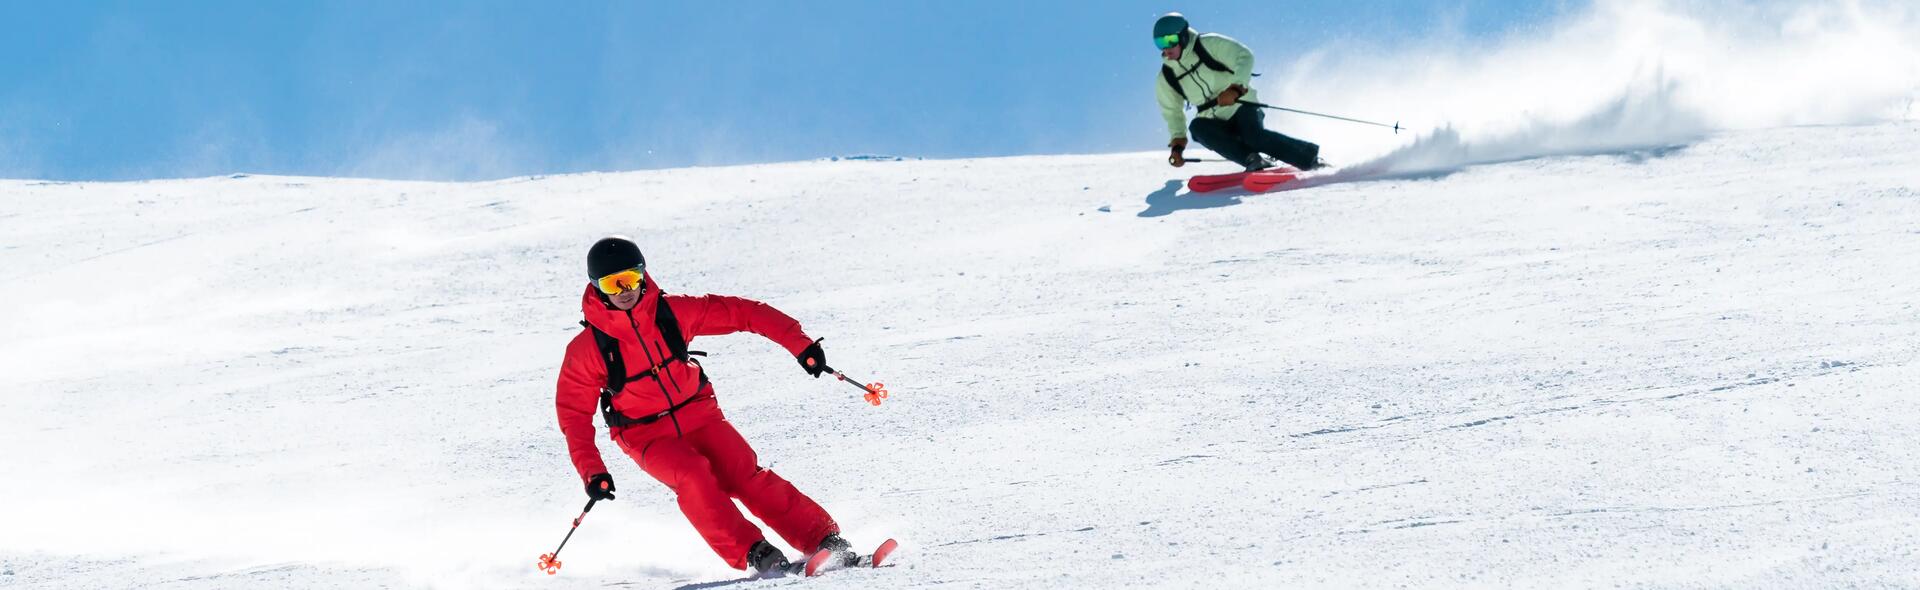 2 osoby trenujące narciarstwo zjazdowe na stoku